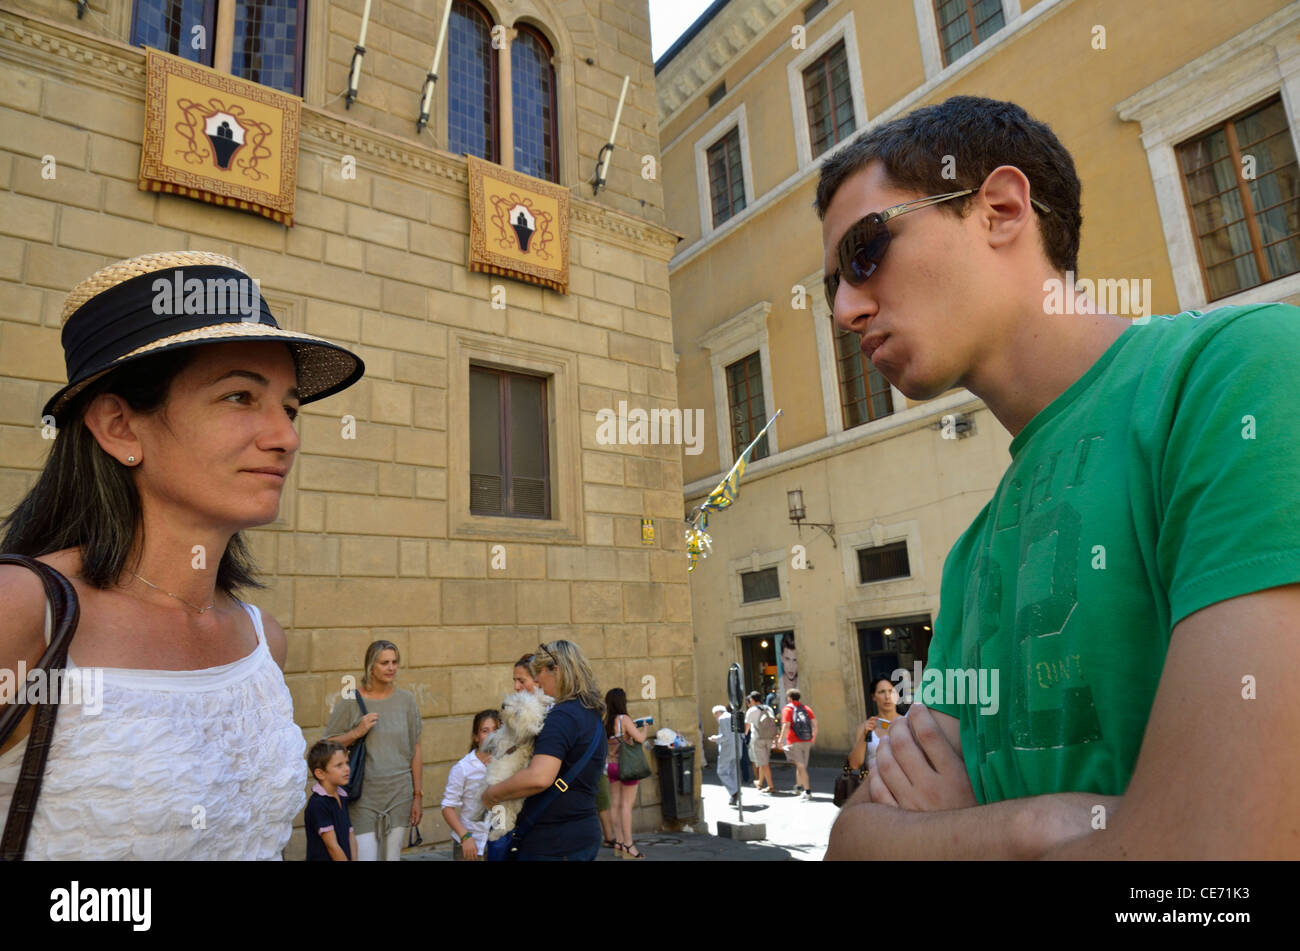 Les touristes sur la Piazza Salimbeni le Palio de Sienne, Sienne, Toscane, Italie Banque D'Images